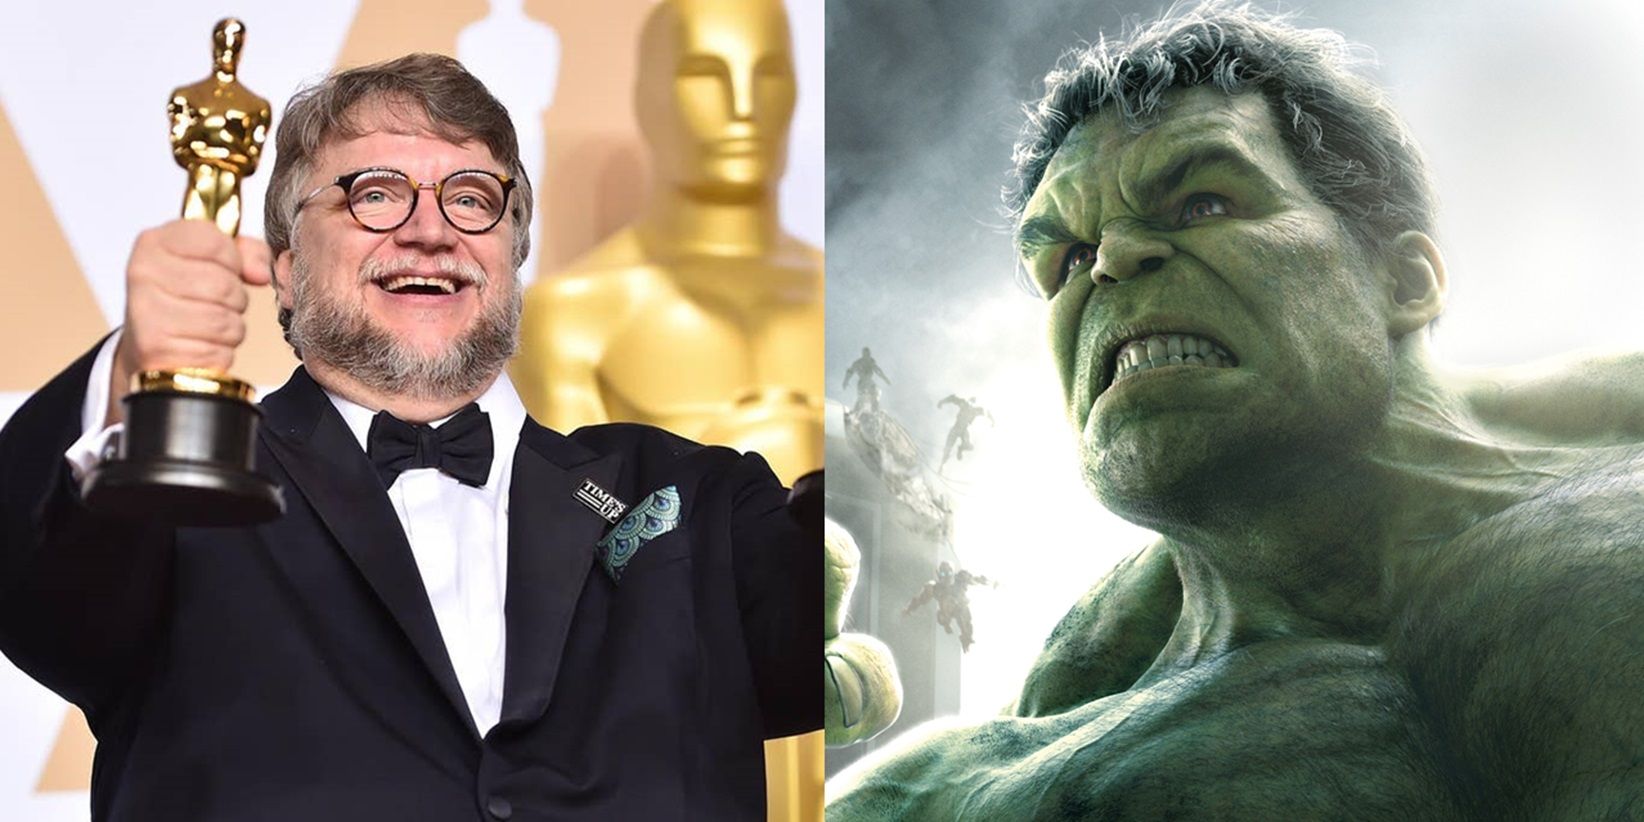 Guillermo del Toro and the Hulk